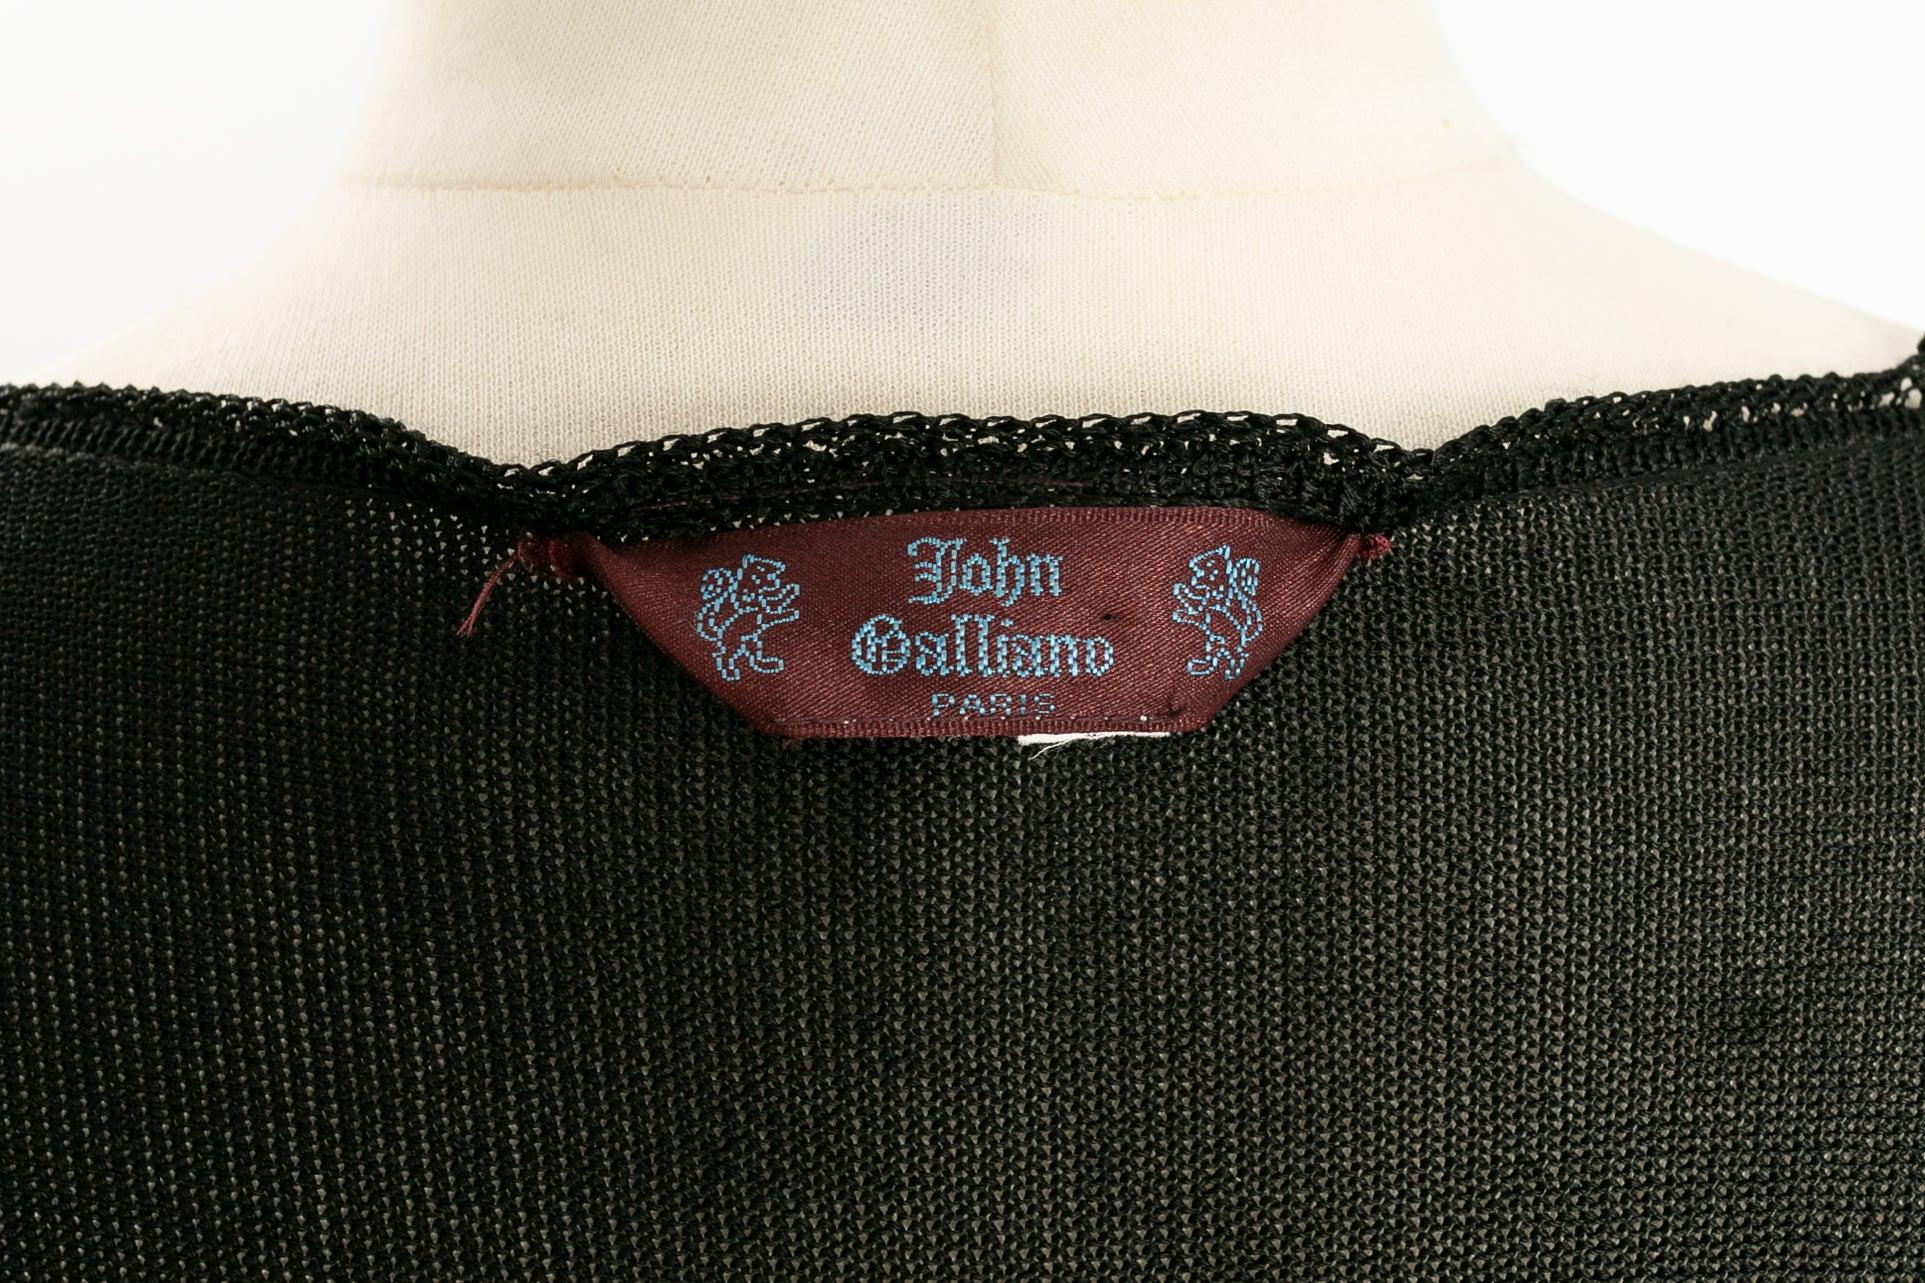 John Galliano Knit Wrap Top in Lace-Like Crochet For Sale 4